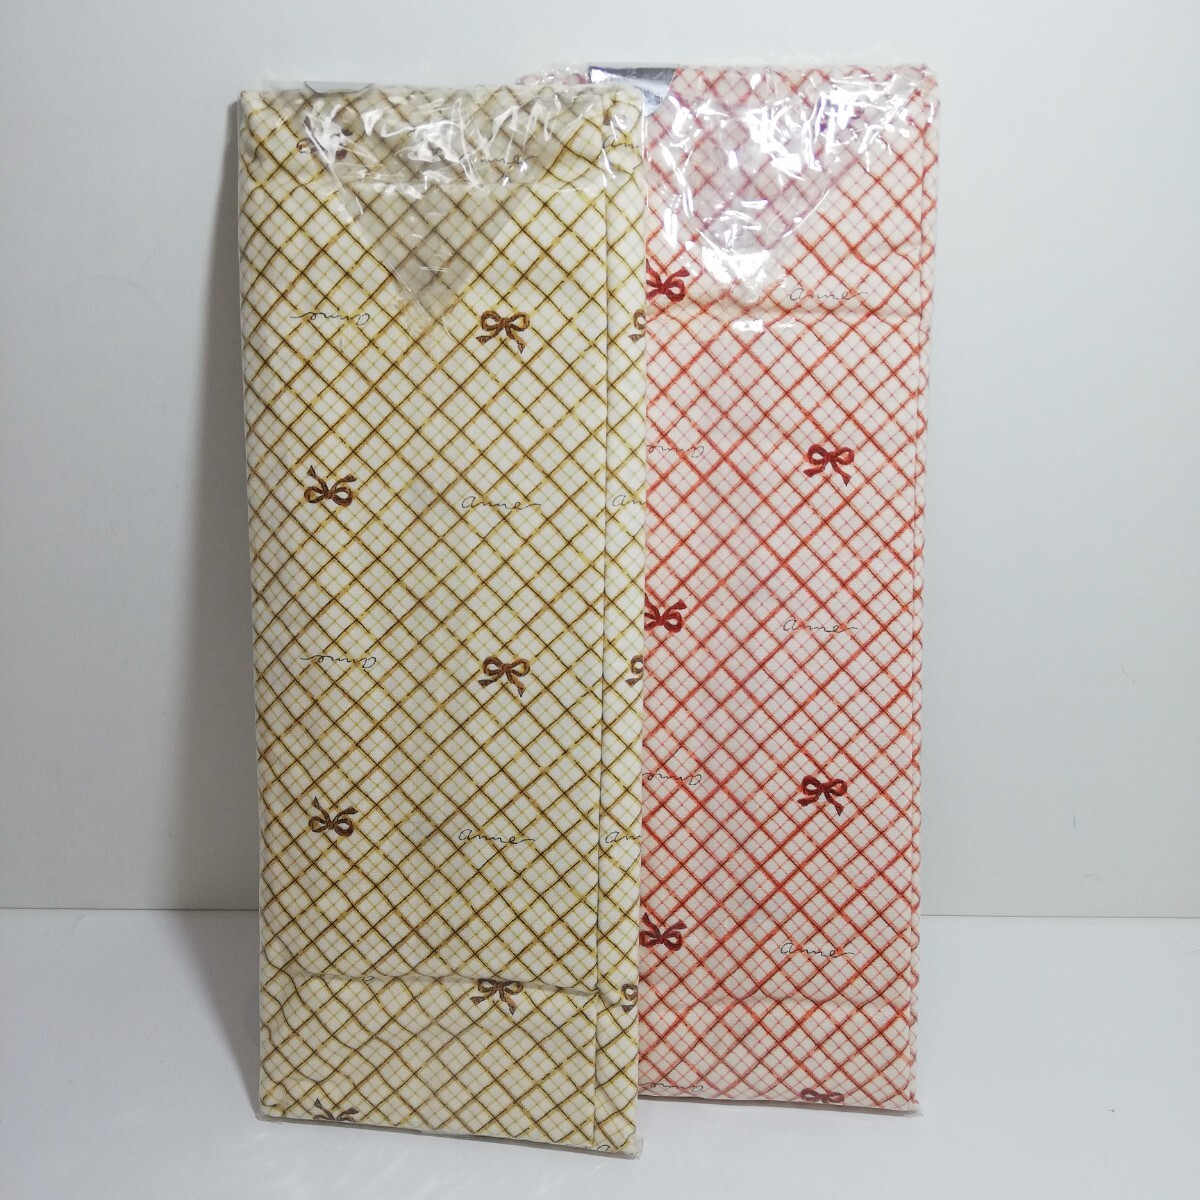 Fabricing リボンクロス柄 ピロケース 枕カバー イエロー・オレンジ 45cm×90cm 2点セット 未使用品 日本製 の画像6